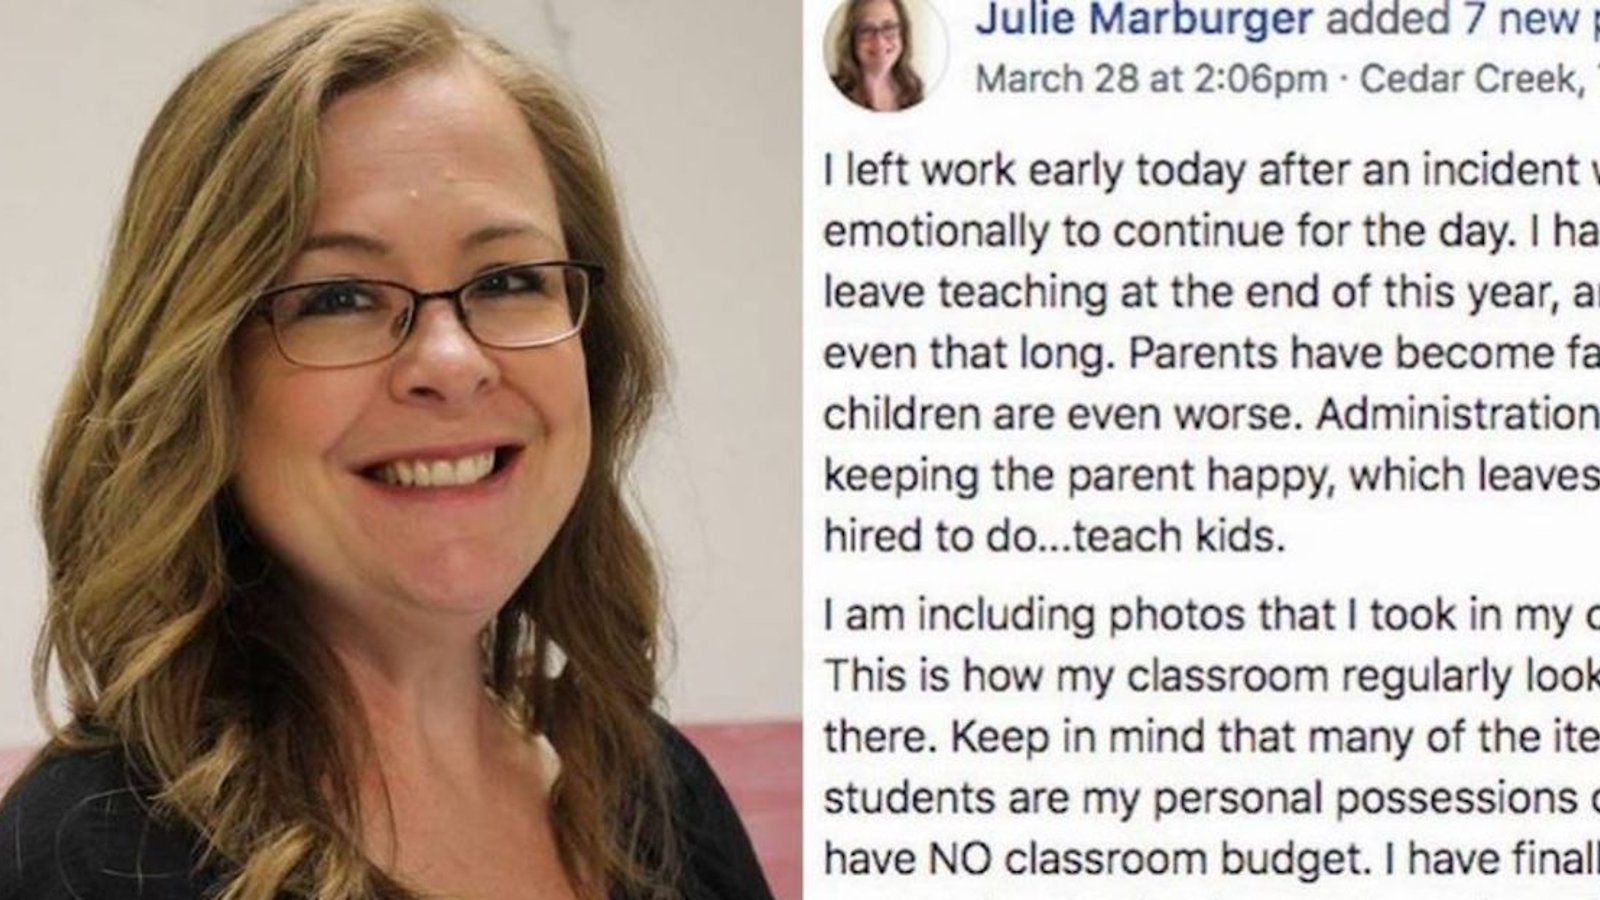 Une enseignante s'en prend aux parents qui dorlotent leurs enfants et leur permettent d’être grossiers et irrespectueux